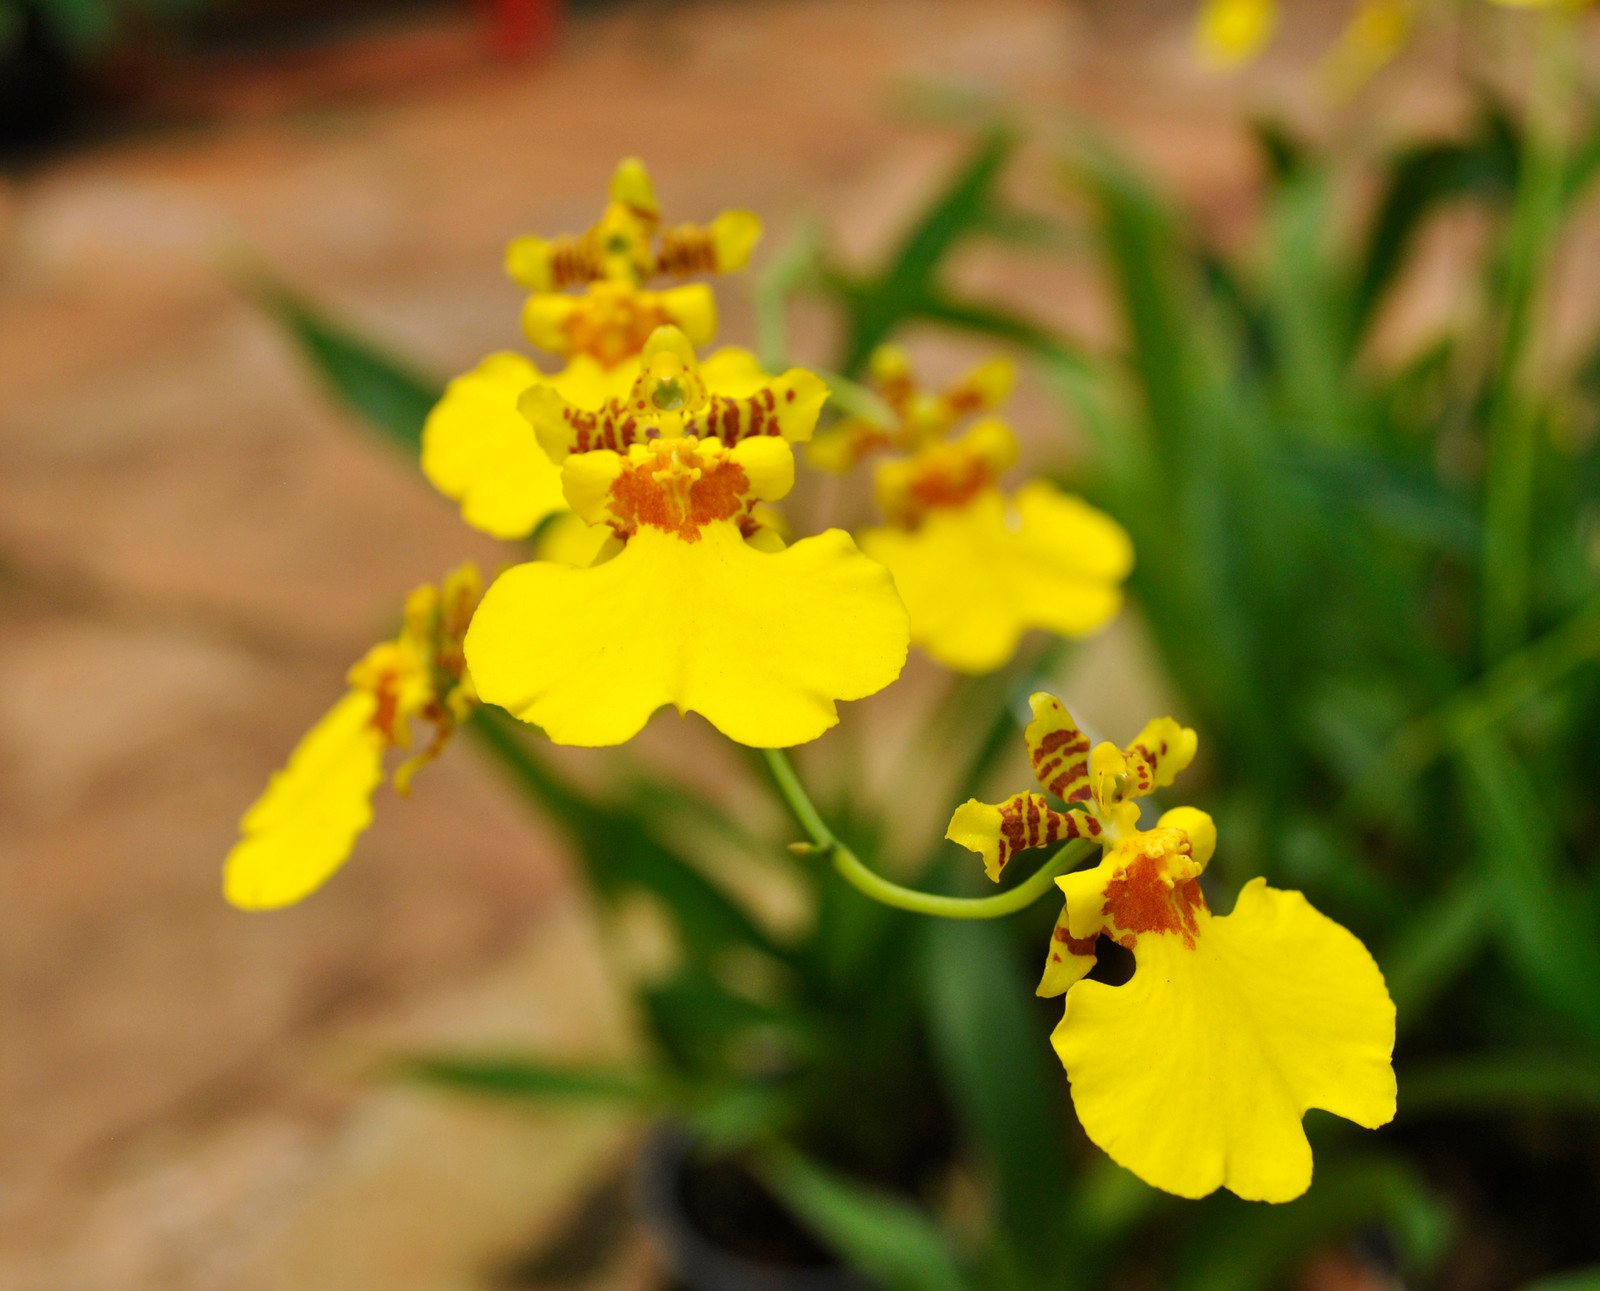 A orquídea Chuva de Ouro significa prosperidade.